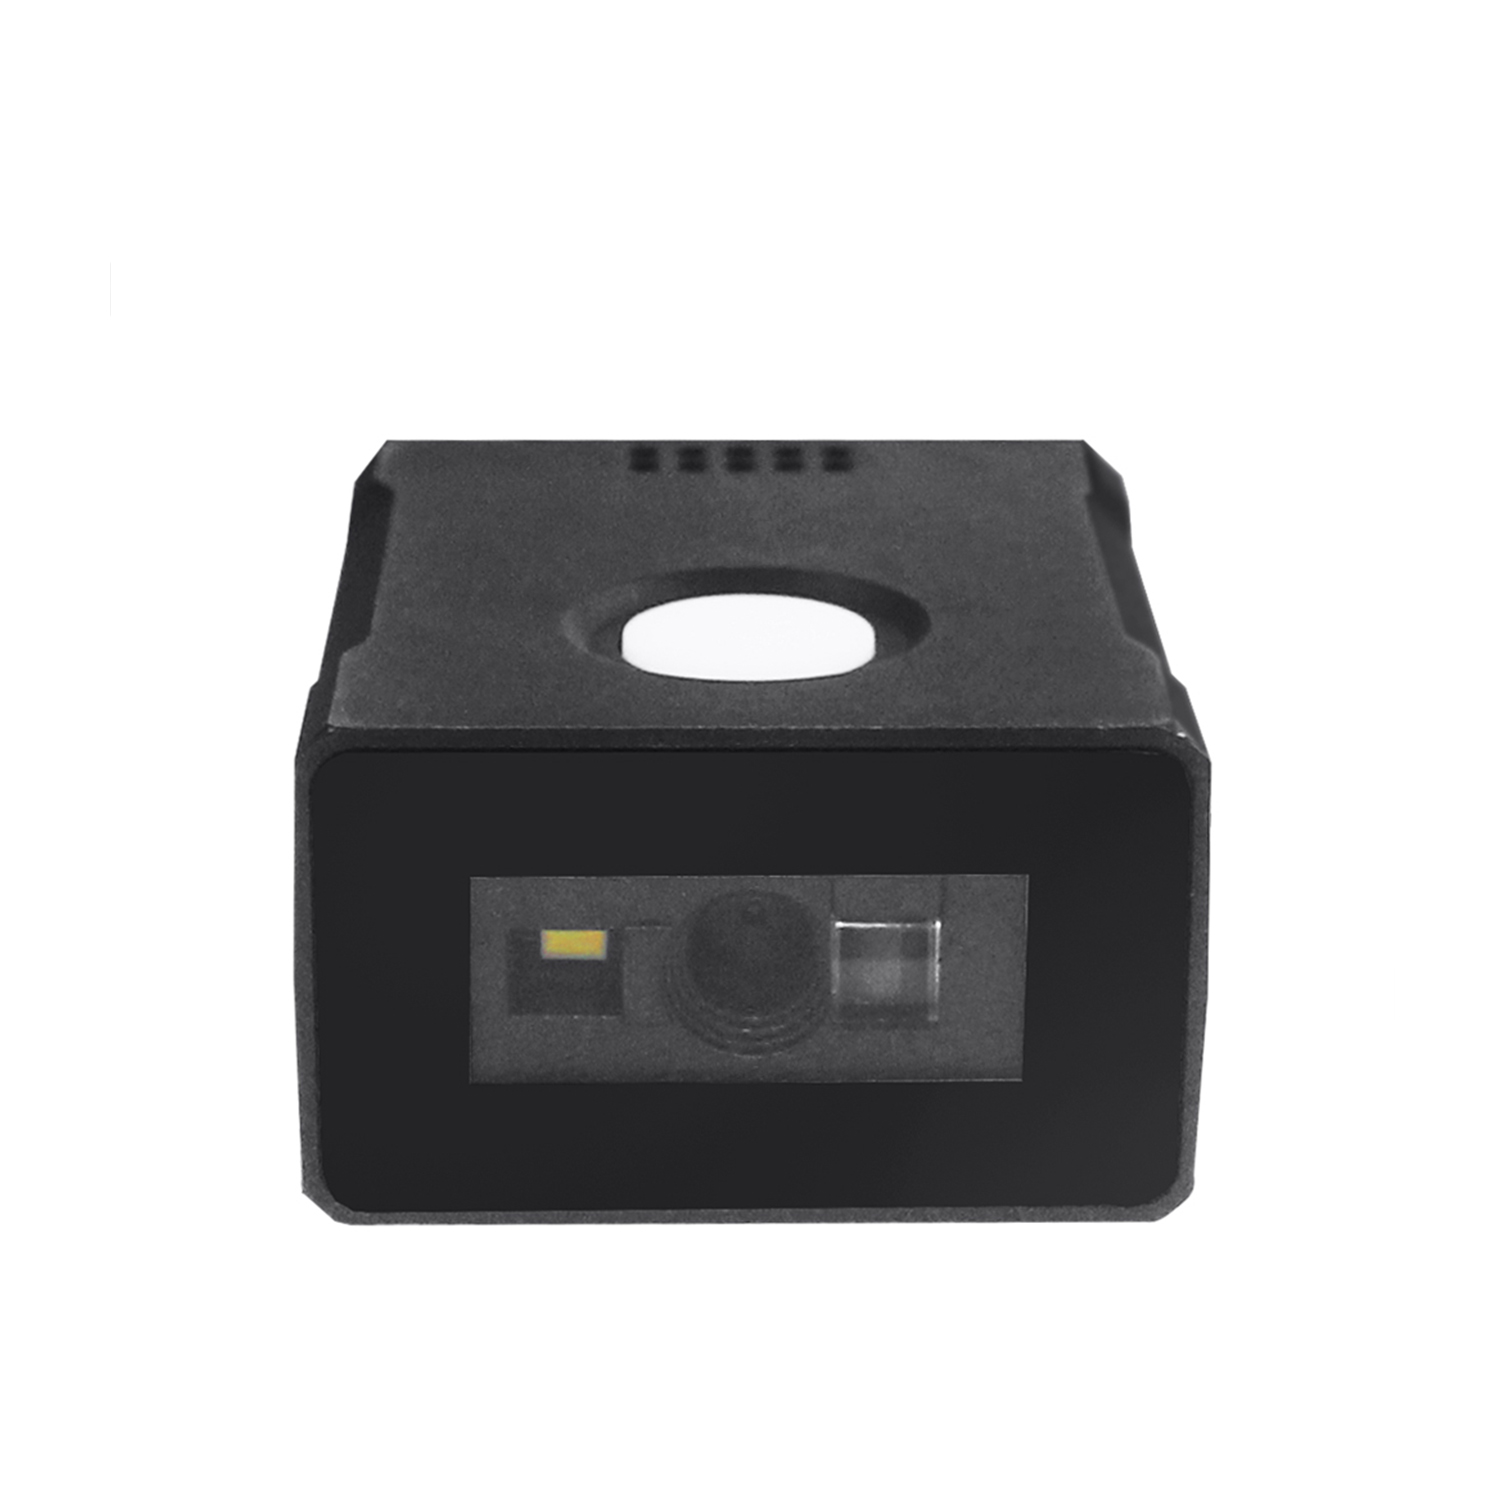 USB 2D-barcodescannermodule met het kleinste formaat
